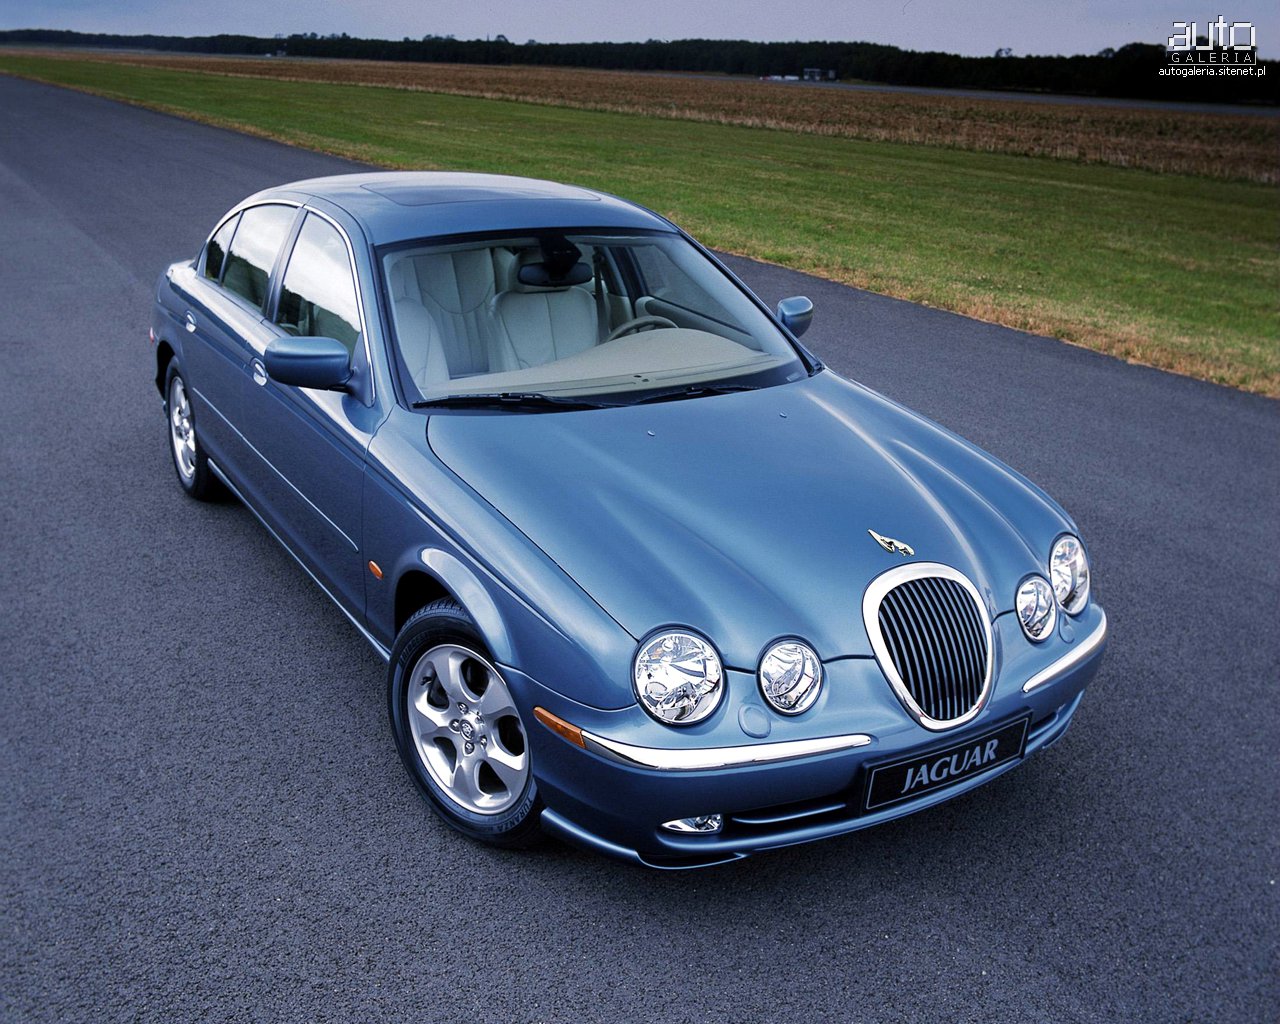 wanted carz blog: jaguar cars Wallpapers